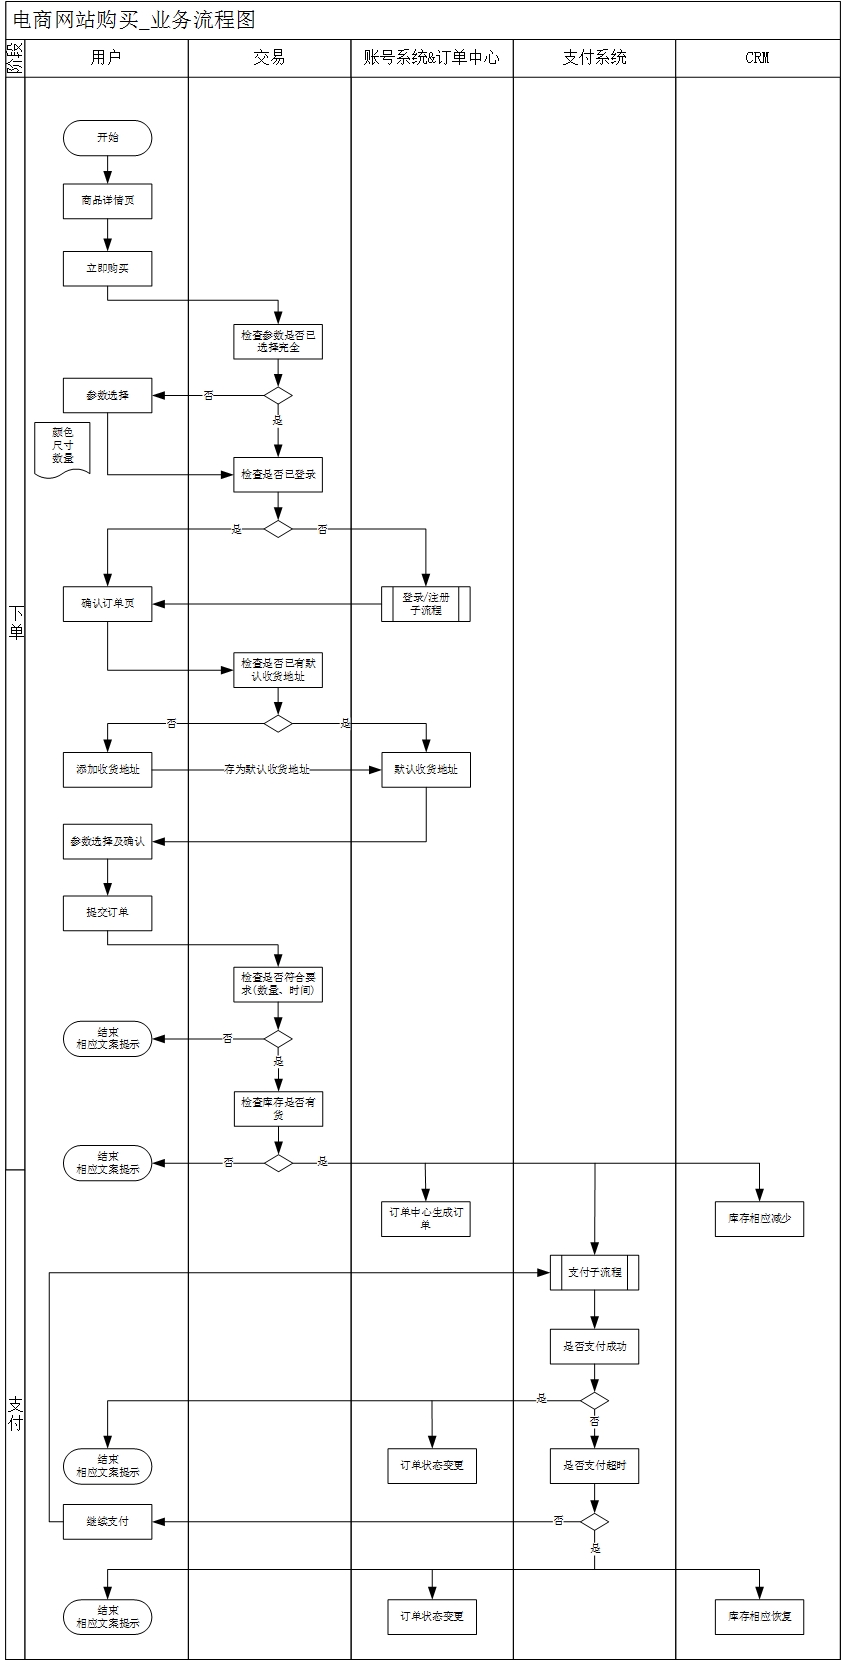 产品流程图 - 图2